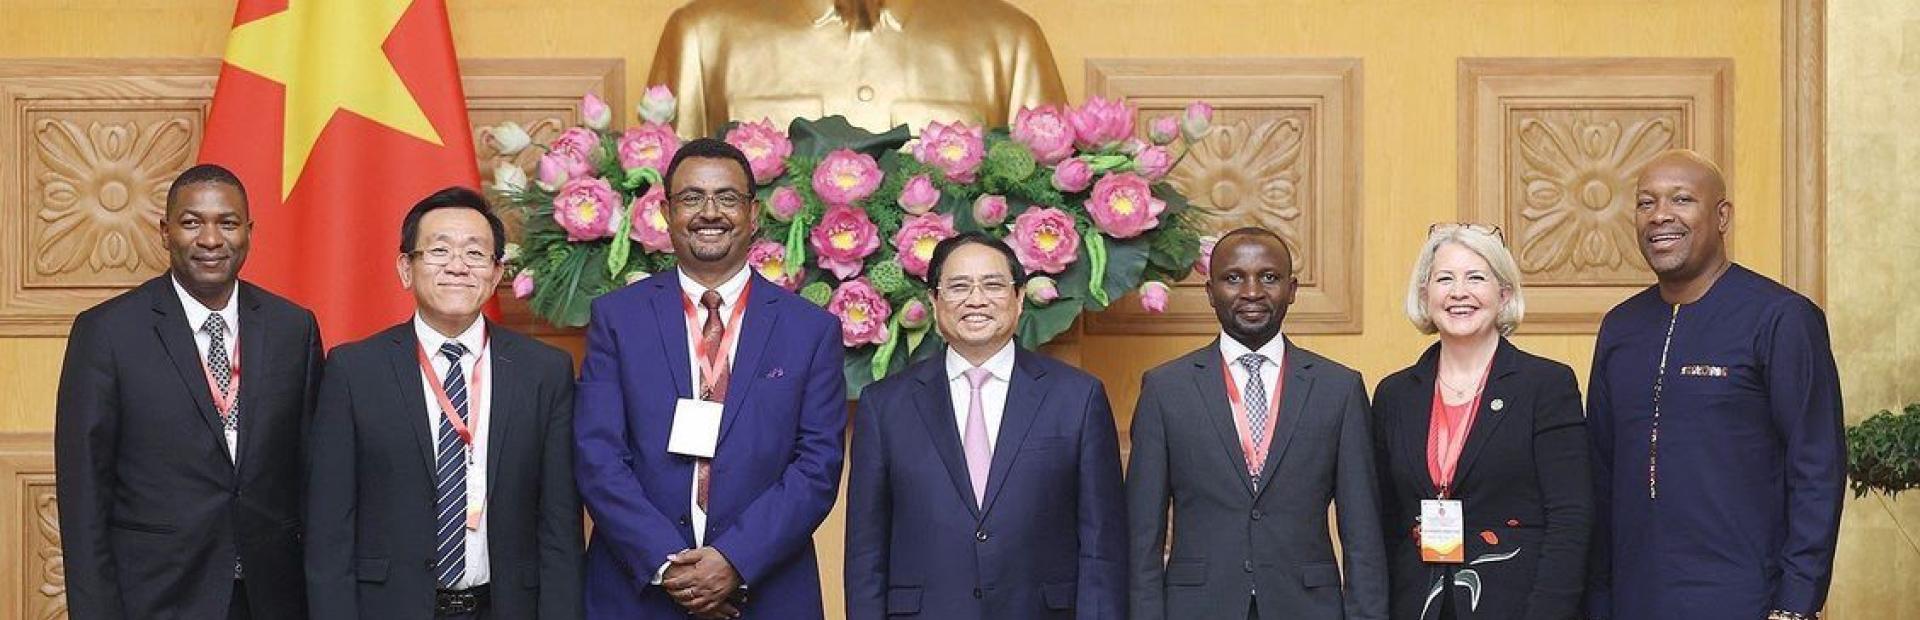 O Primeiro-Ministro do Vietnã, Phạm Minh Chính (centro) recebeu as autoridades participantes na Conferência. À direita, o Ministro de Agricultura, Florestas, Pesca, Transformação Rural, Indústria e Trabalho de São Vicente e Granadinas, Saboto Caesar.